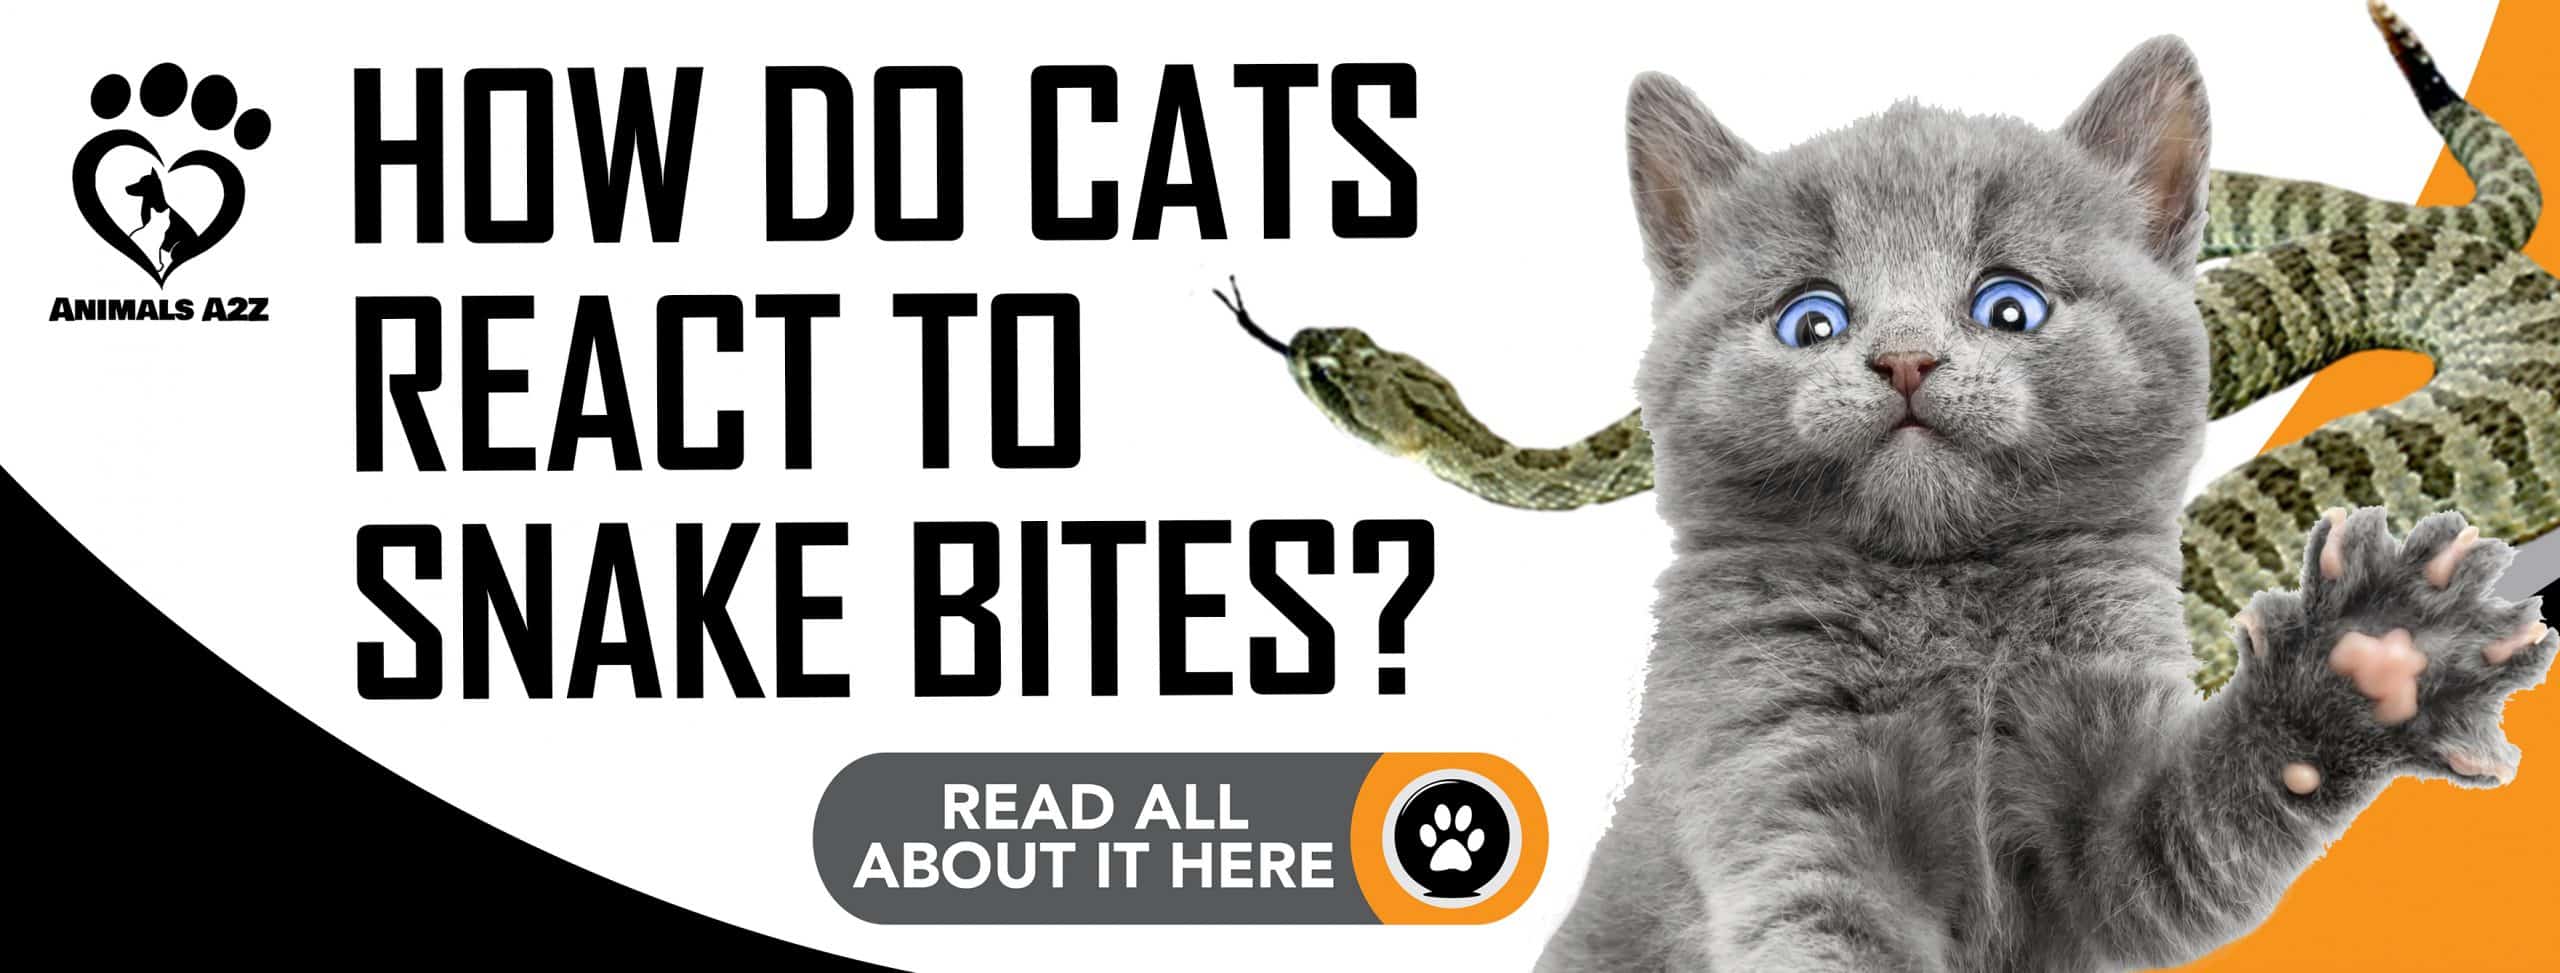 Wie reagieren Katzen auf Schlangenbisse?